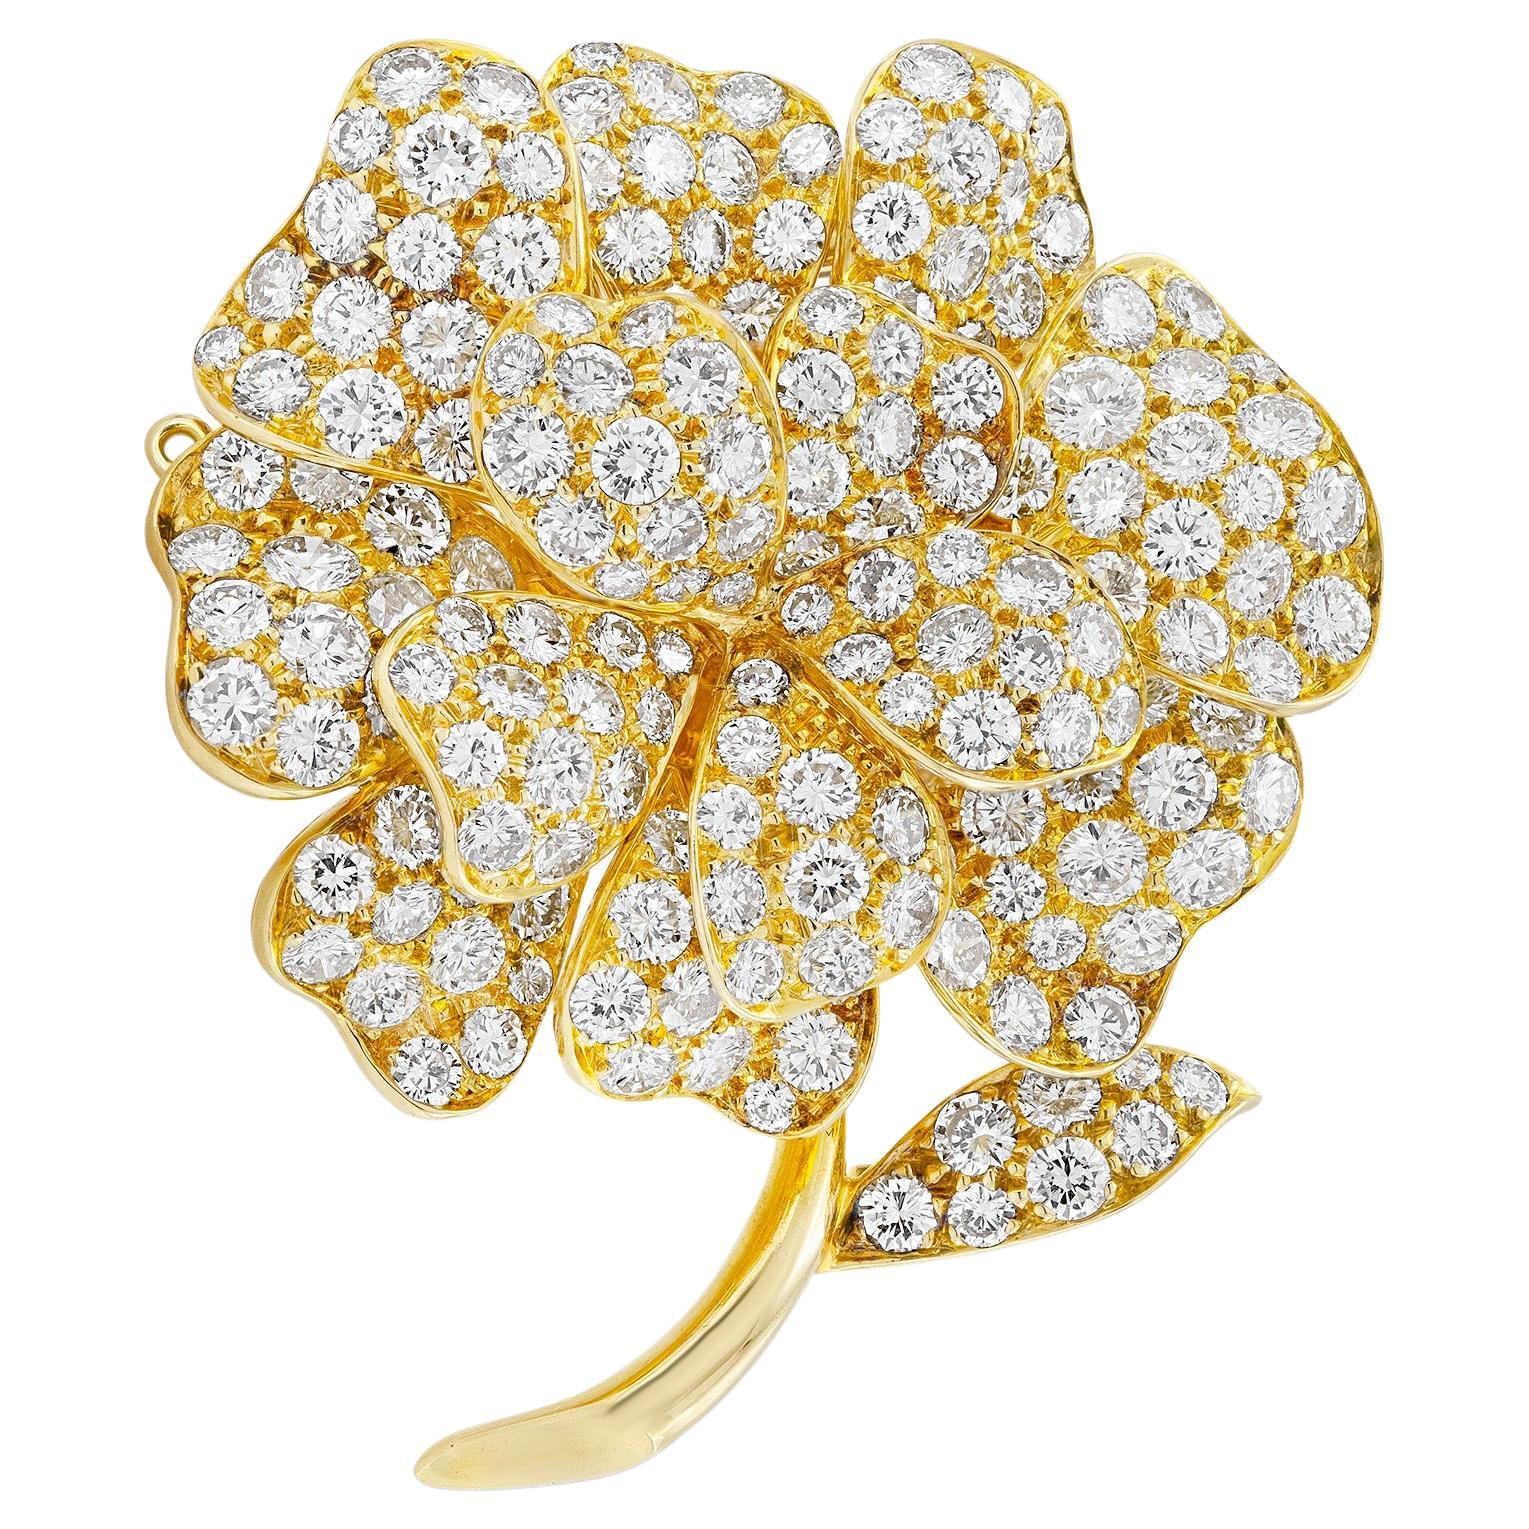 Van Cleef & Arpels Diamond Flower Brooch